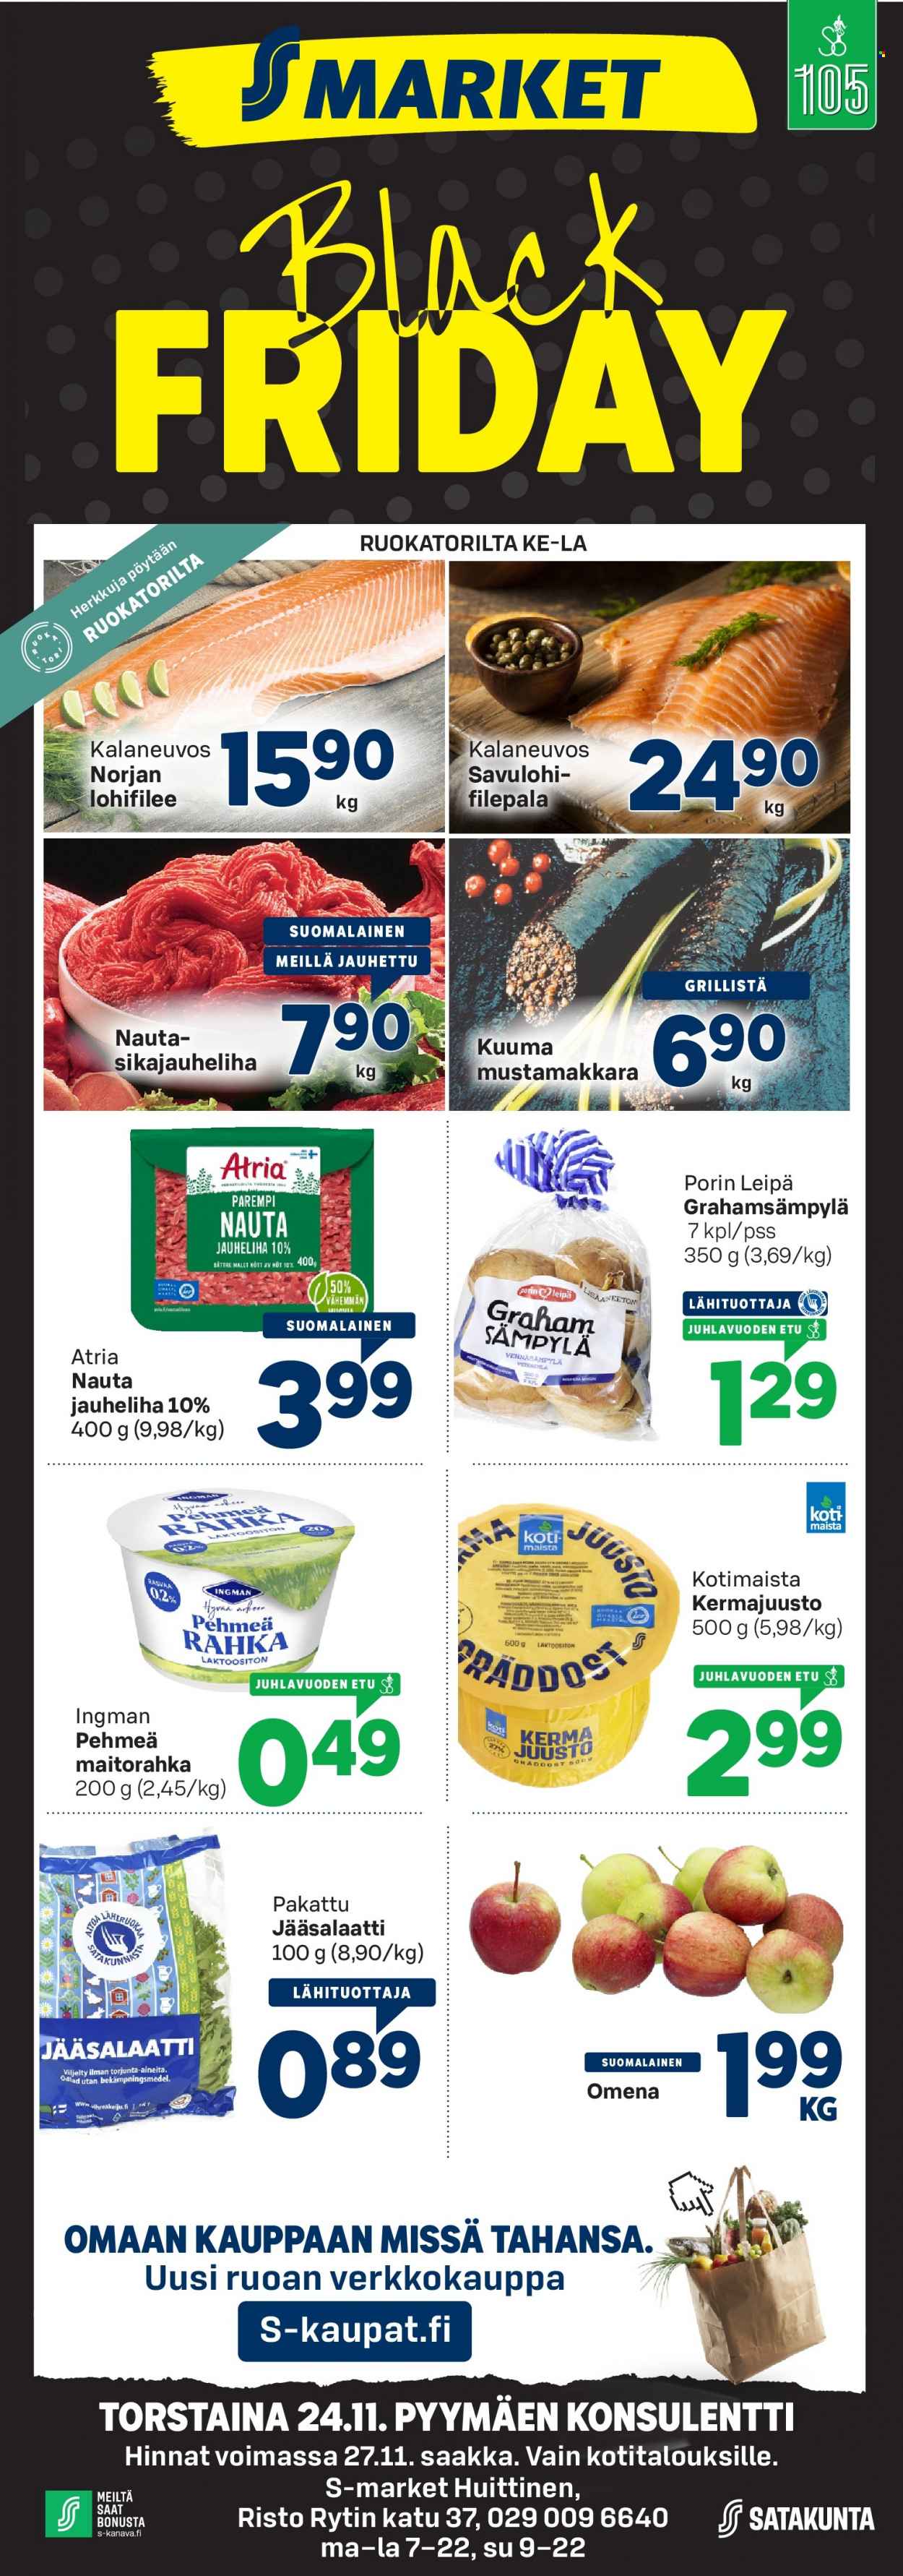 thumbnail - S-market tarjoukset  - 25.11.2022 - 27.11.2022 - Tarjoustuotteet - jauheliha, lohifilee, Atria, mustamakkara, kermajuusto, juusto. Sivu 1.